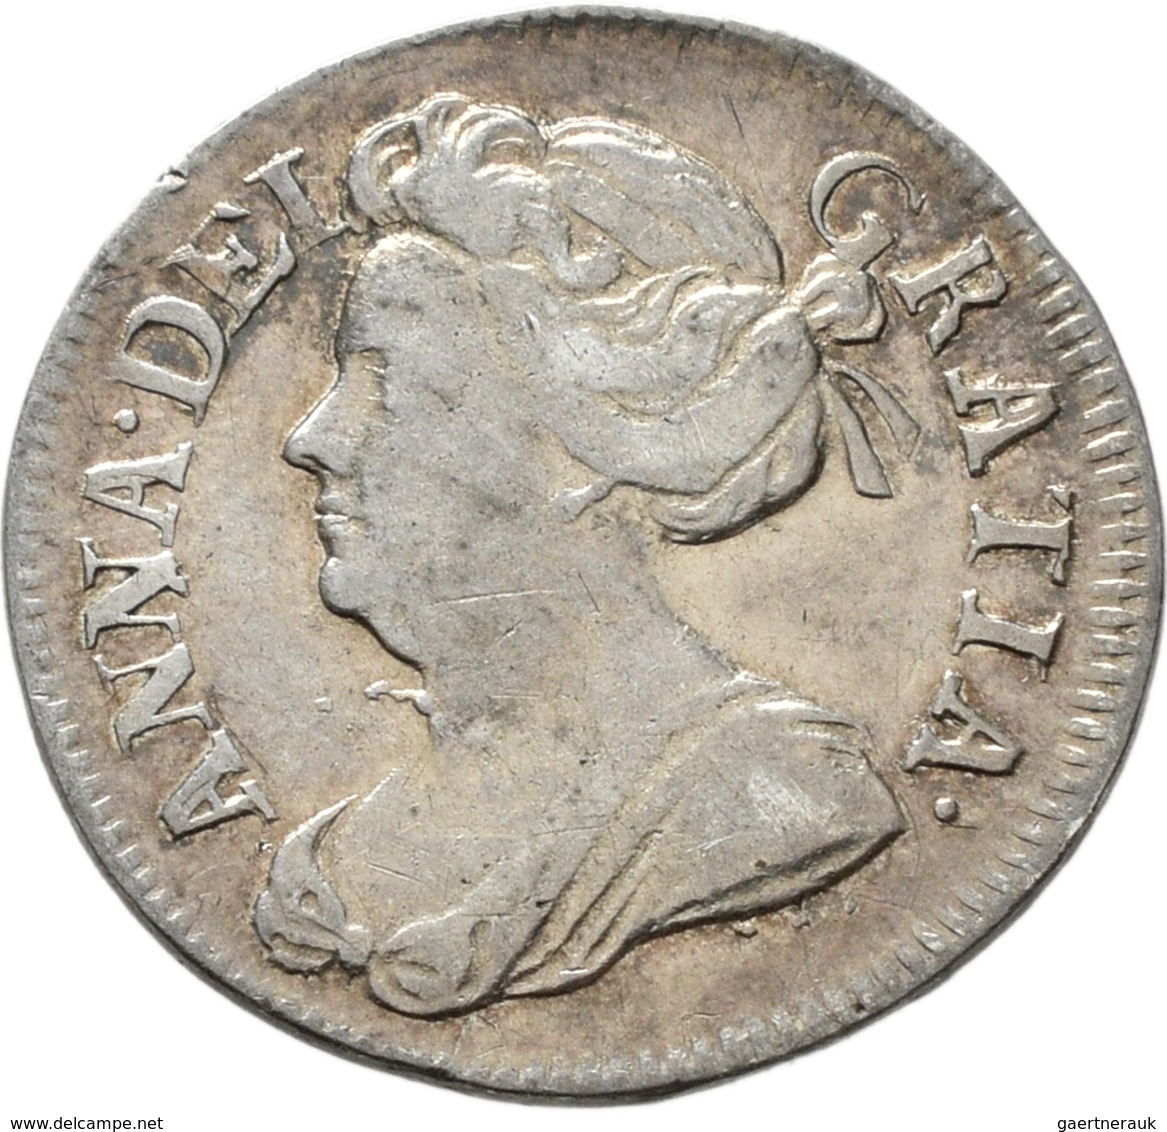 Großbritannien: Anne 1702-1714: Maundy Set 1,2,3,4 Pence 1713, sehr schön-vorzüglich.